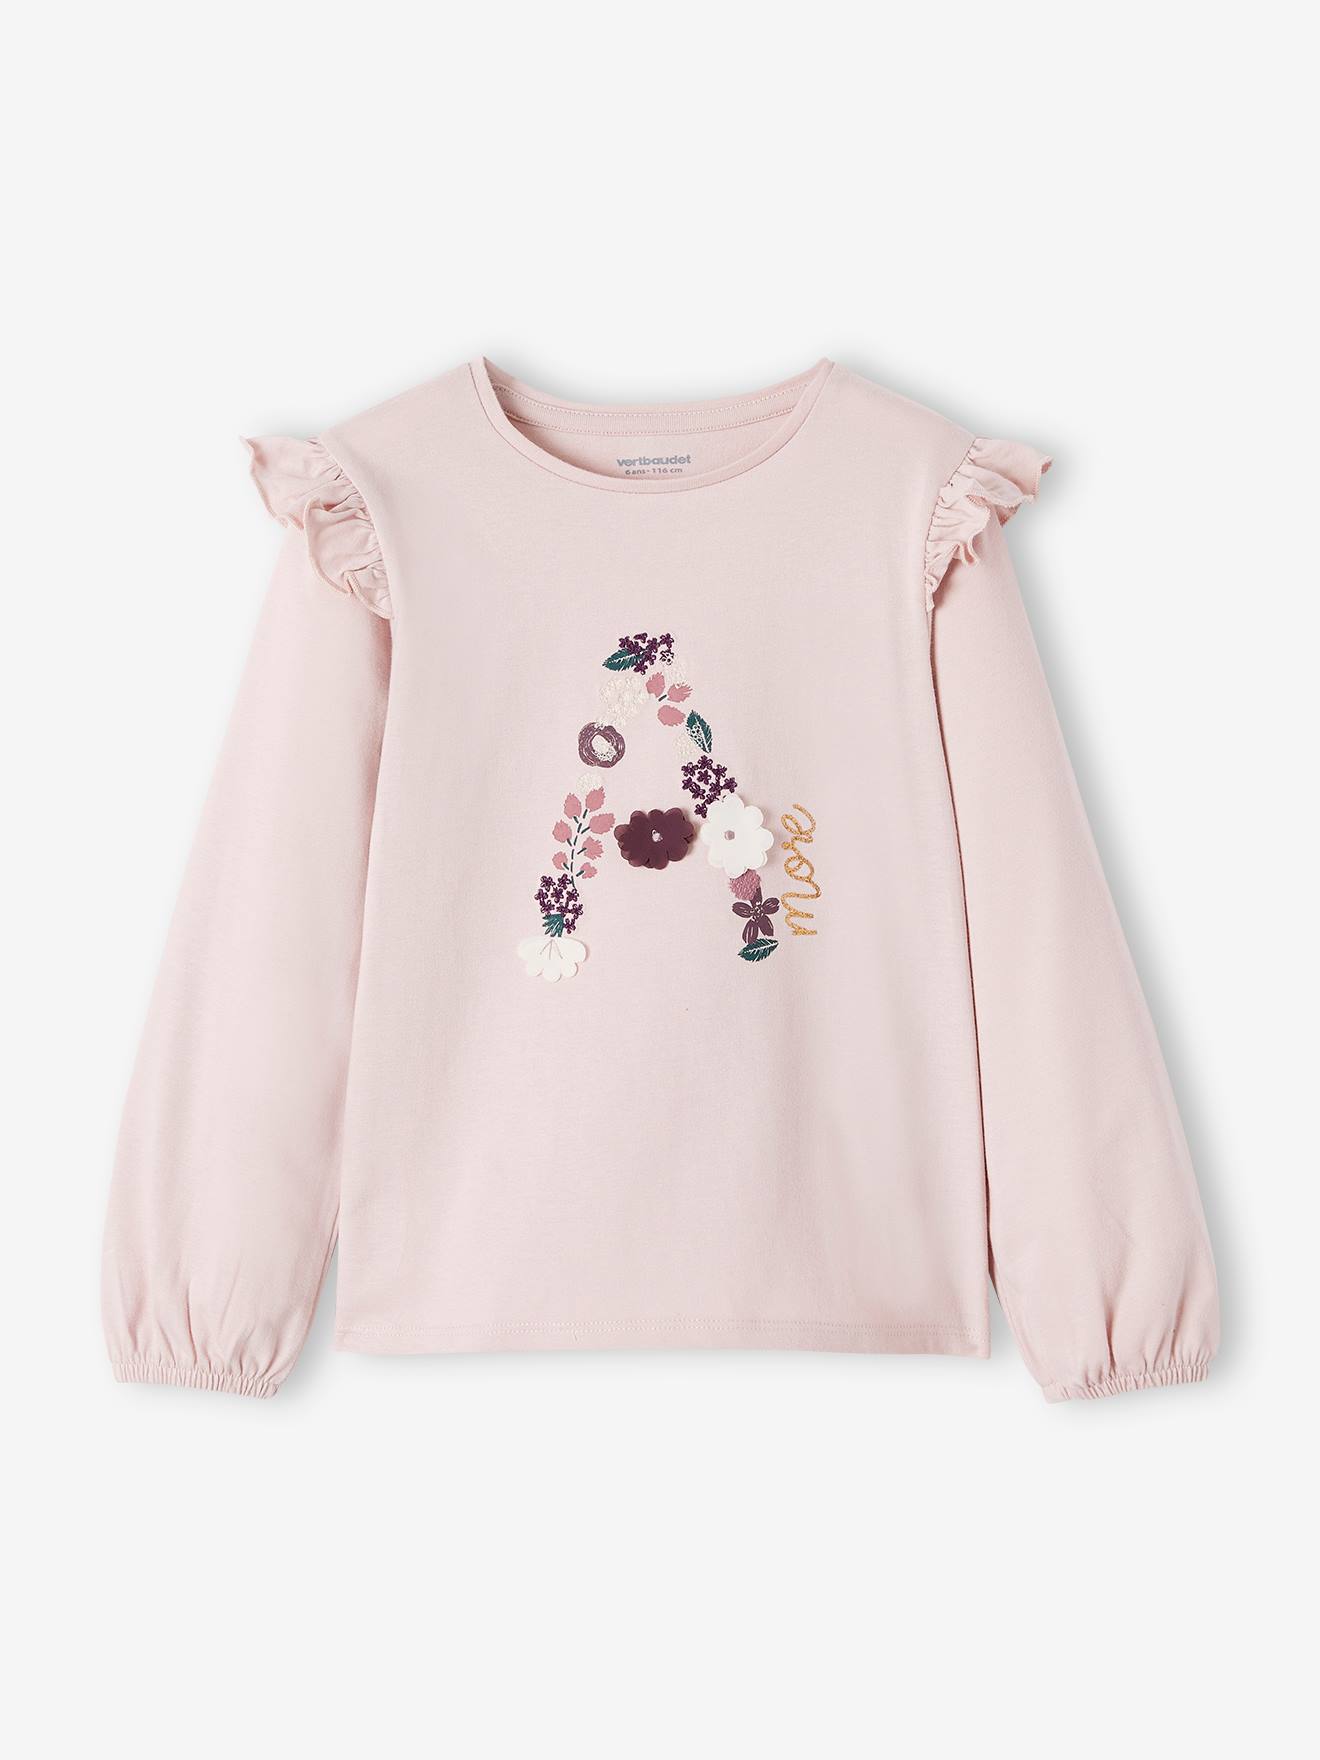 T-shirt meisje medium roze - 15-1905 tcx